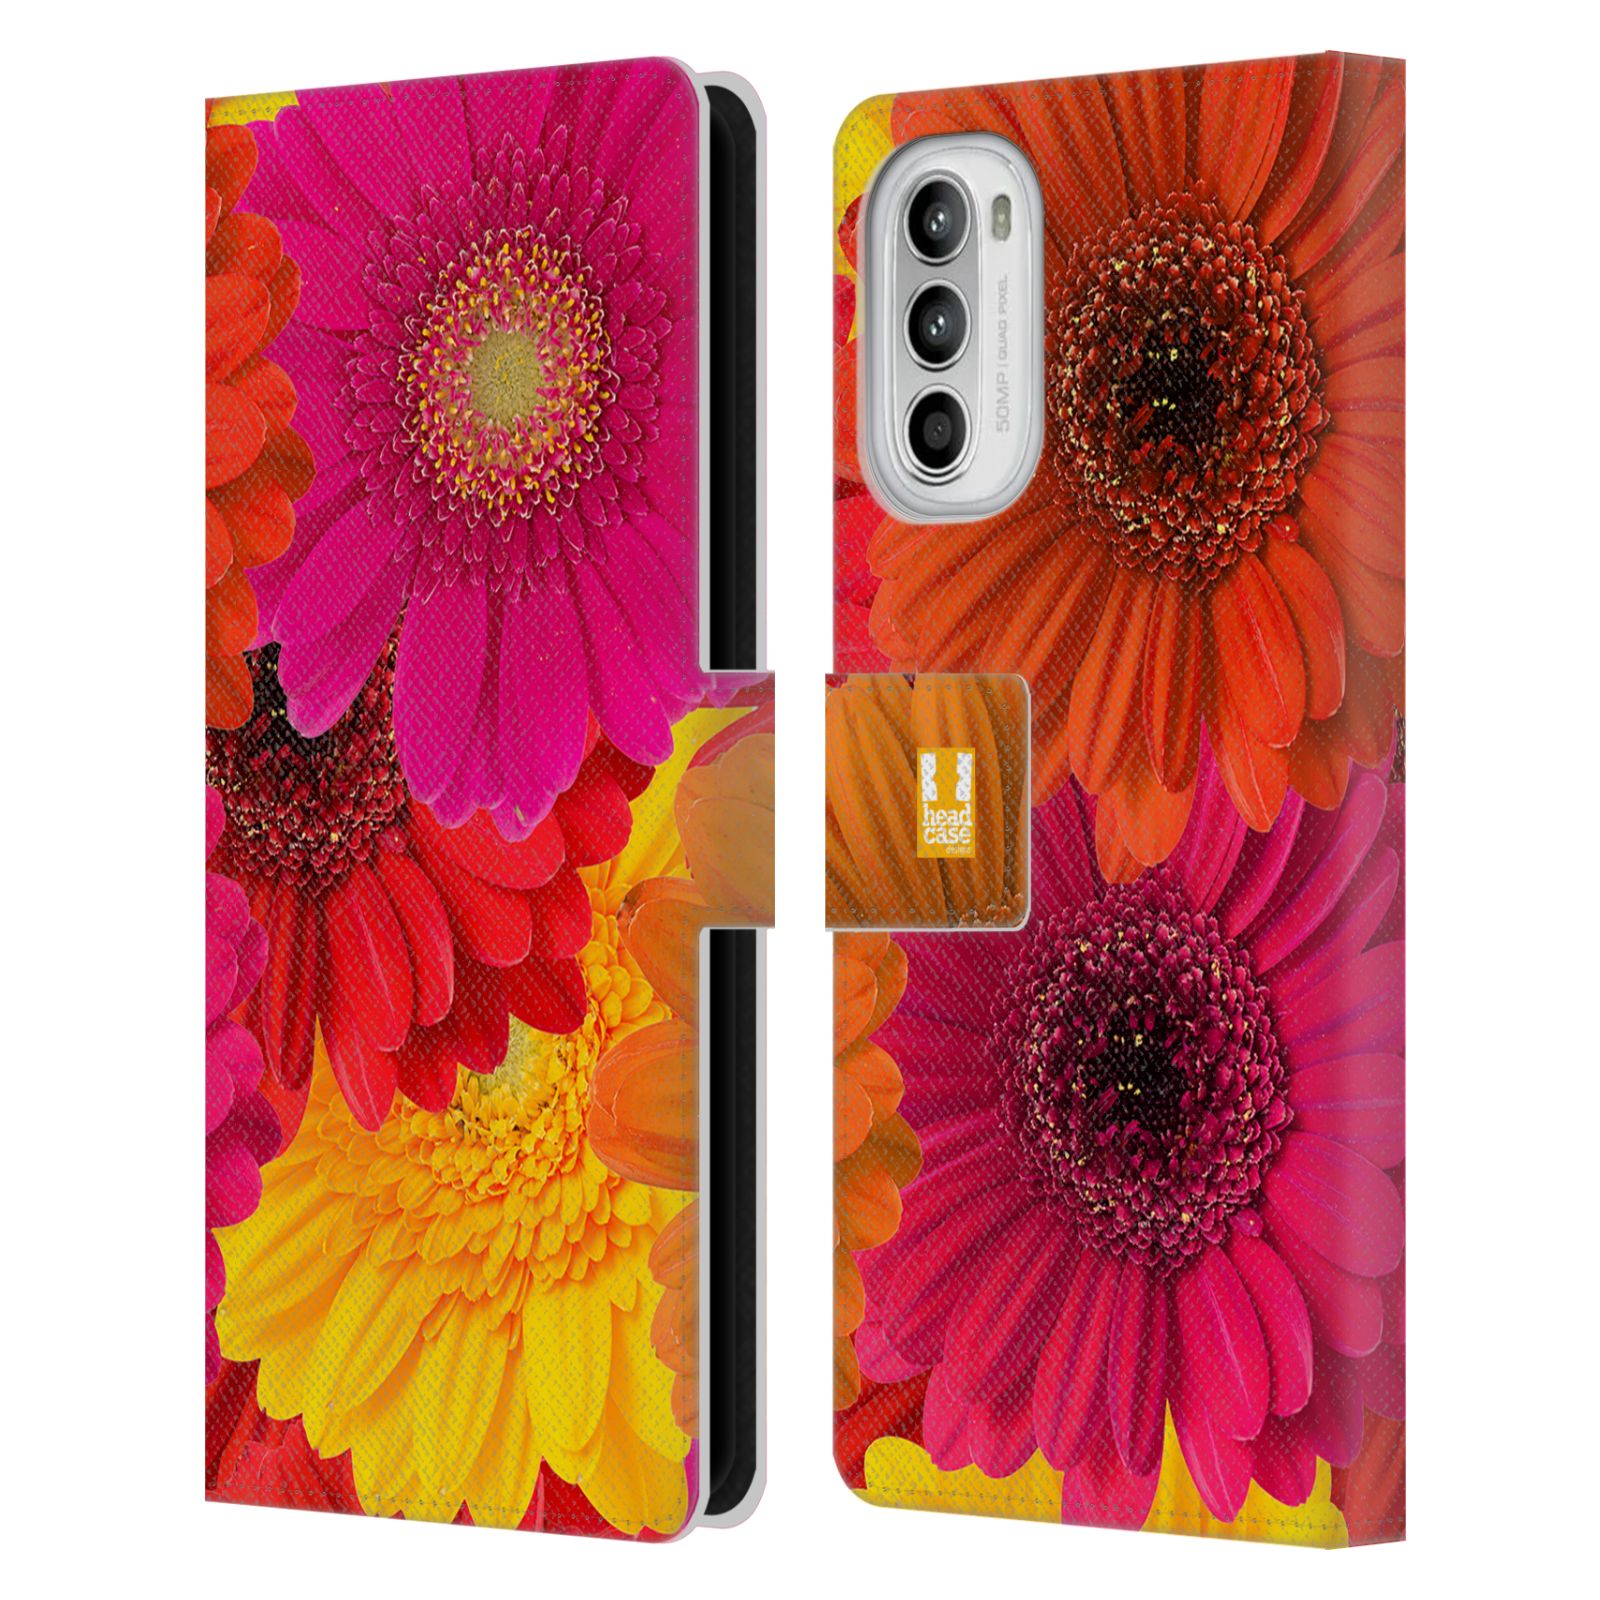 Pouzdro HEAD CASE na mobil Motorola Moto G52 květy foto fialová, oranžová GERBERA